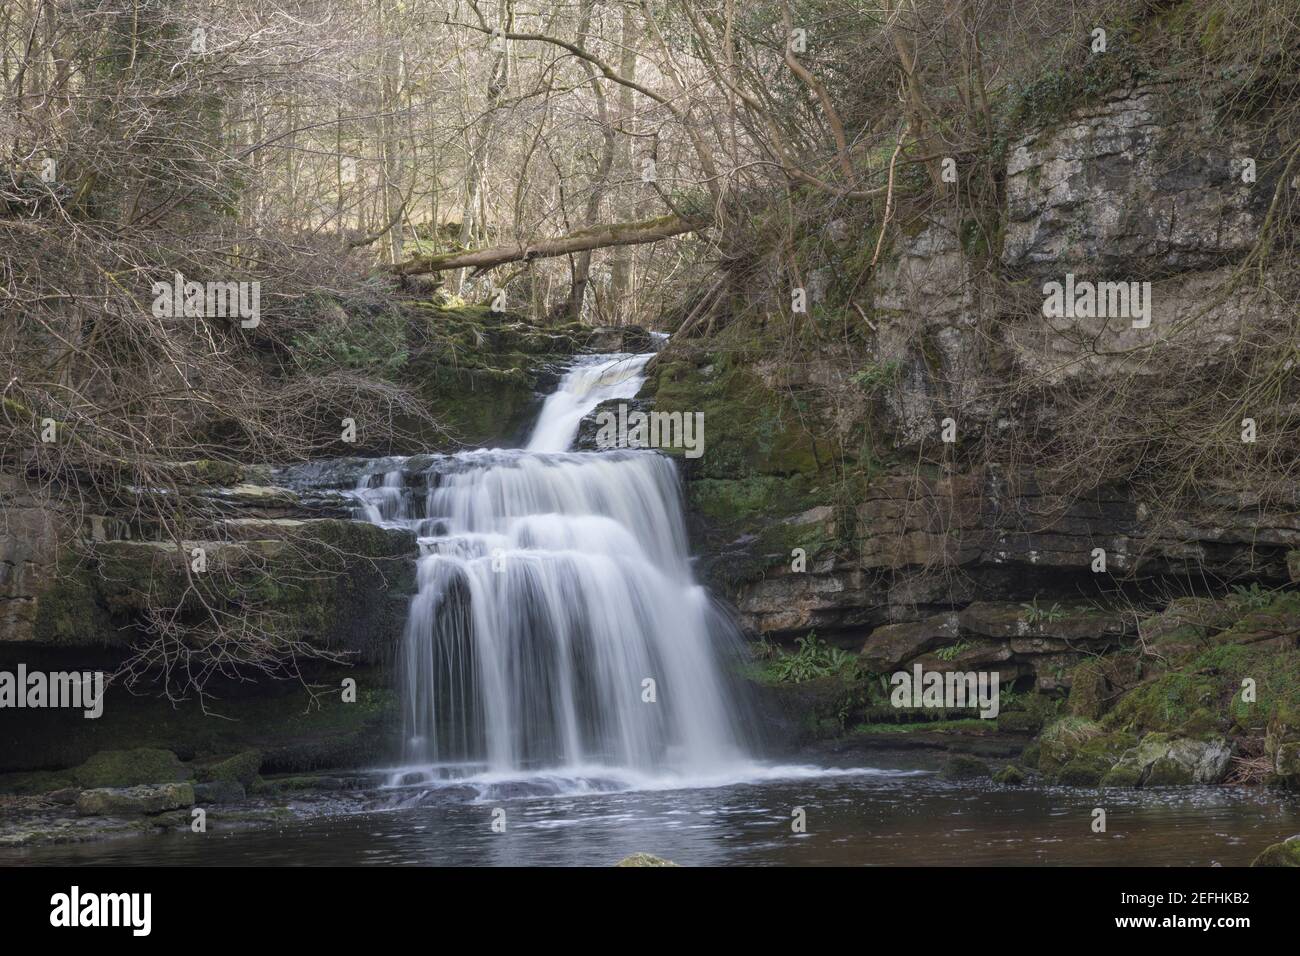 West Burton waterfall, North Yorkshire. Stock Photo